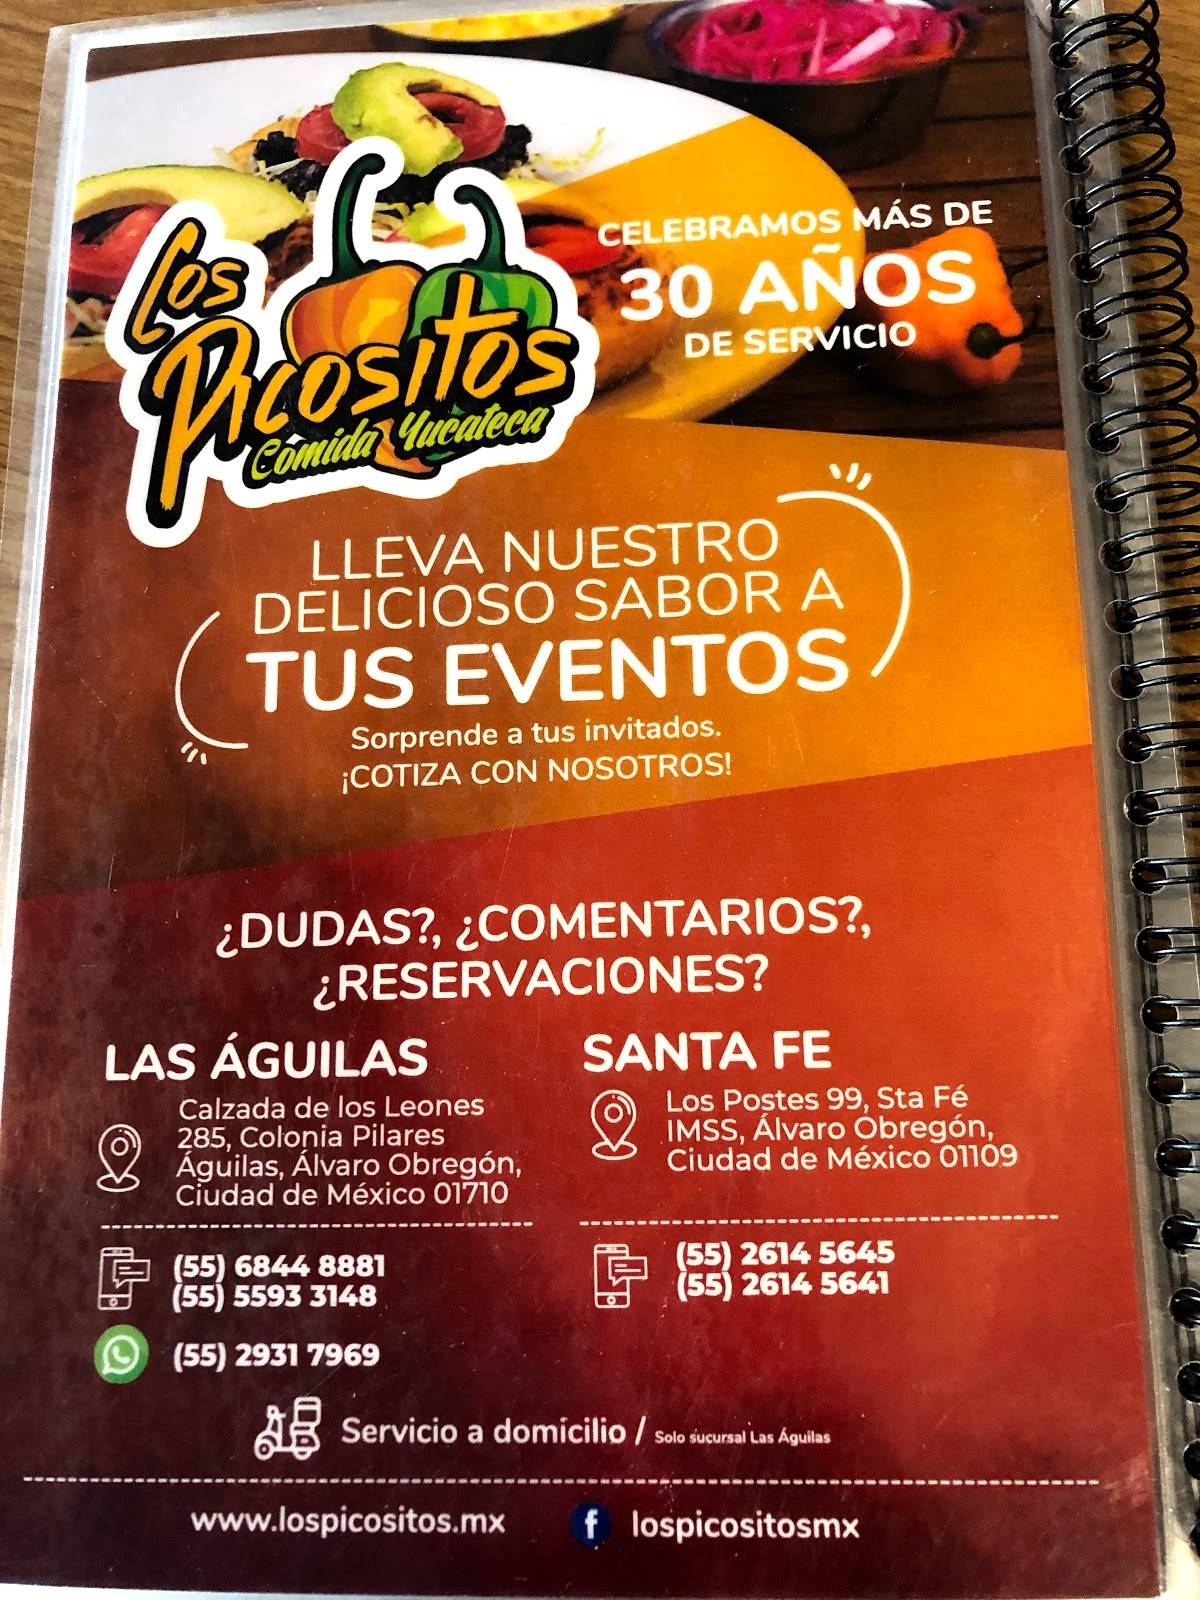 Carta del restaurante Los Picositos - Aguilas, Ciudad del México, Calz del  los Leones 285